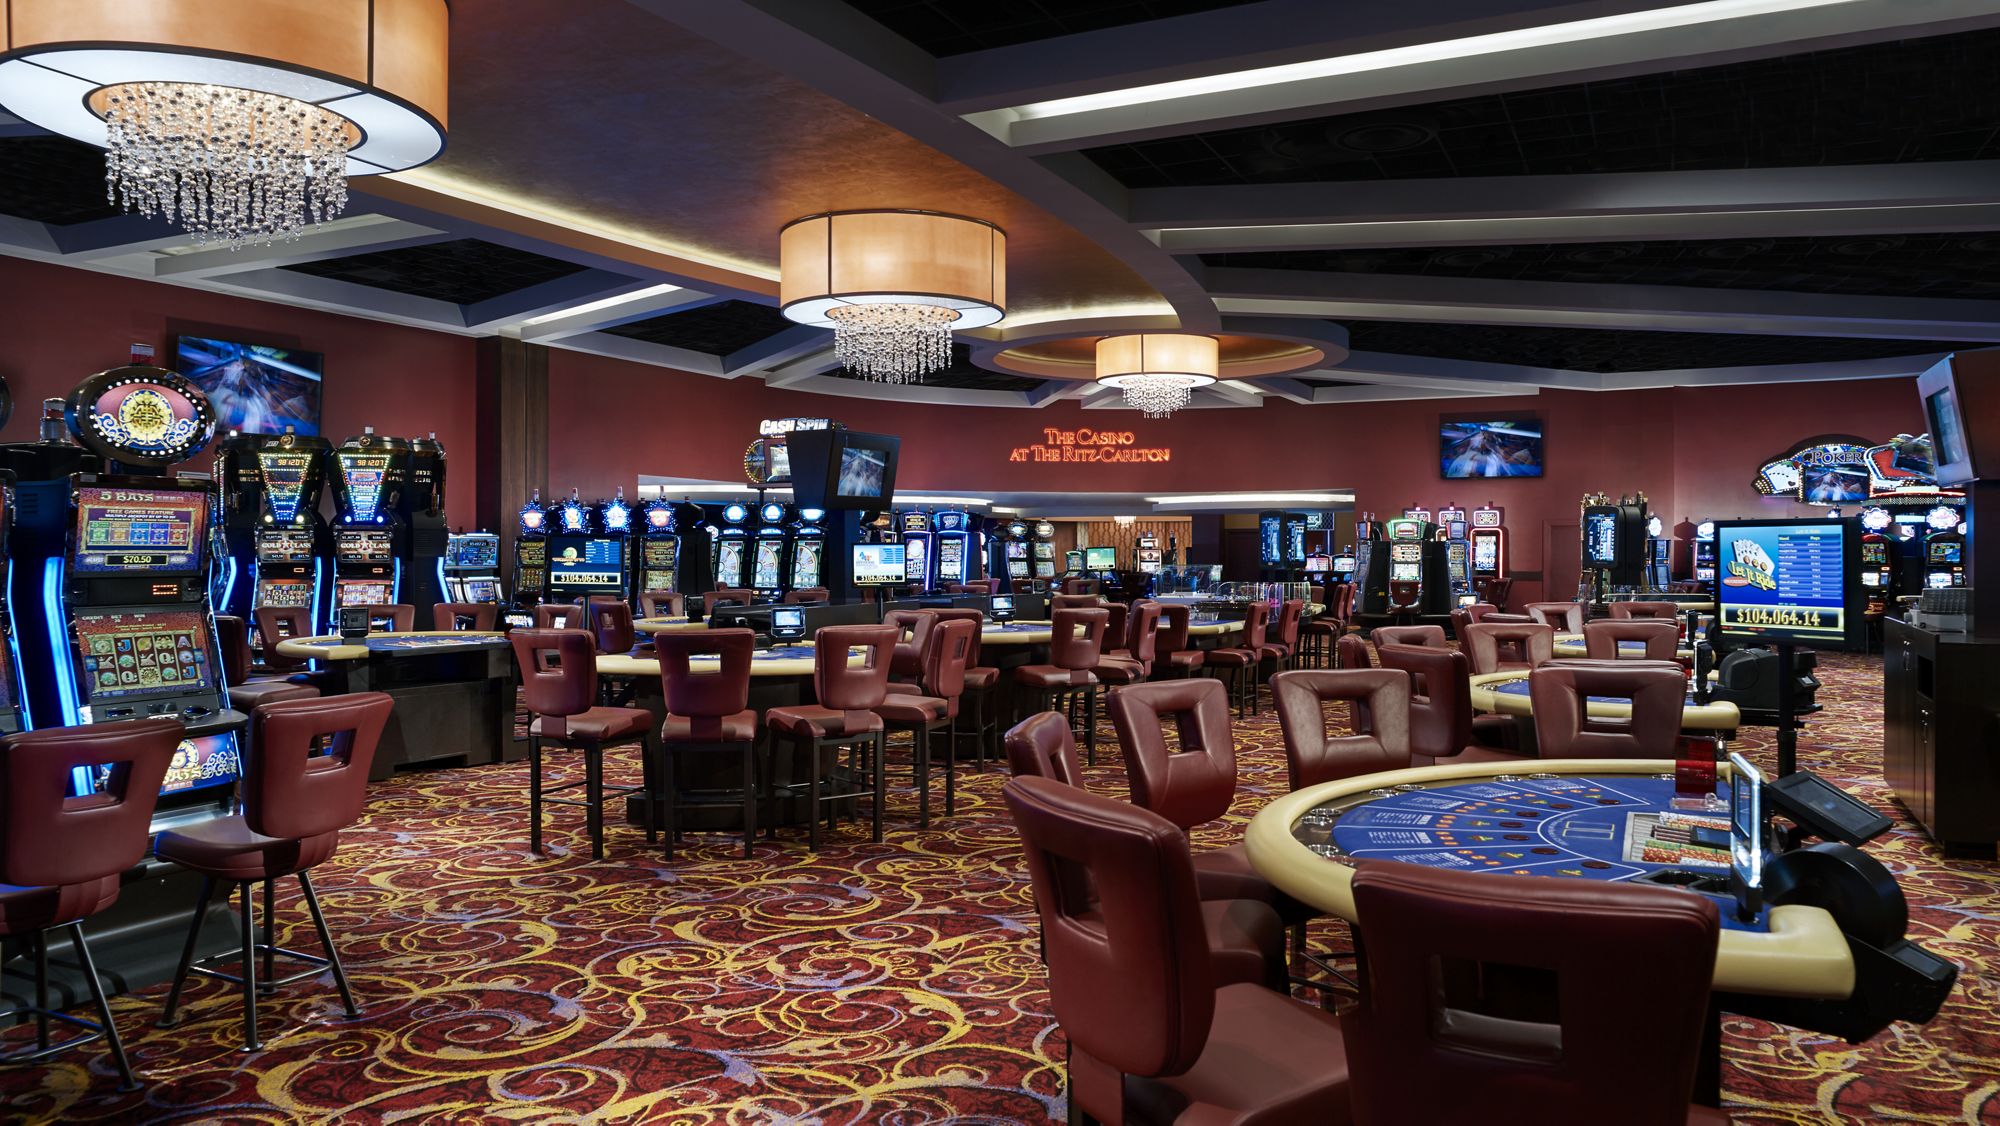 Carlton казино казино вулкан онлайн на реальные деньги без вложений с выводом денег